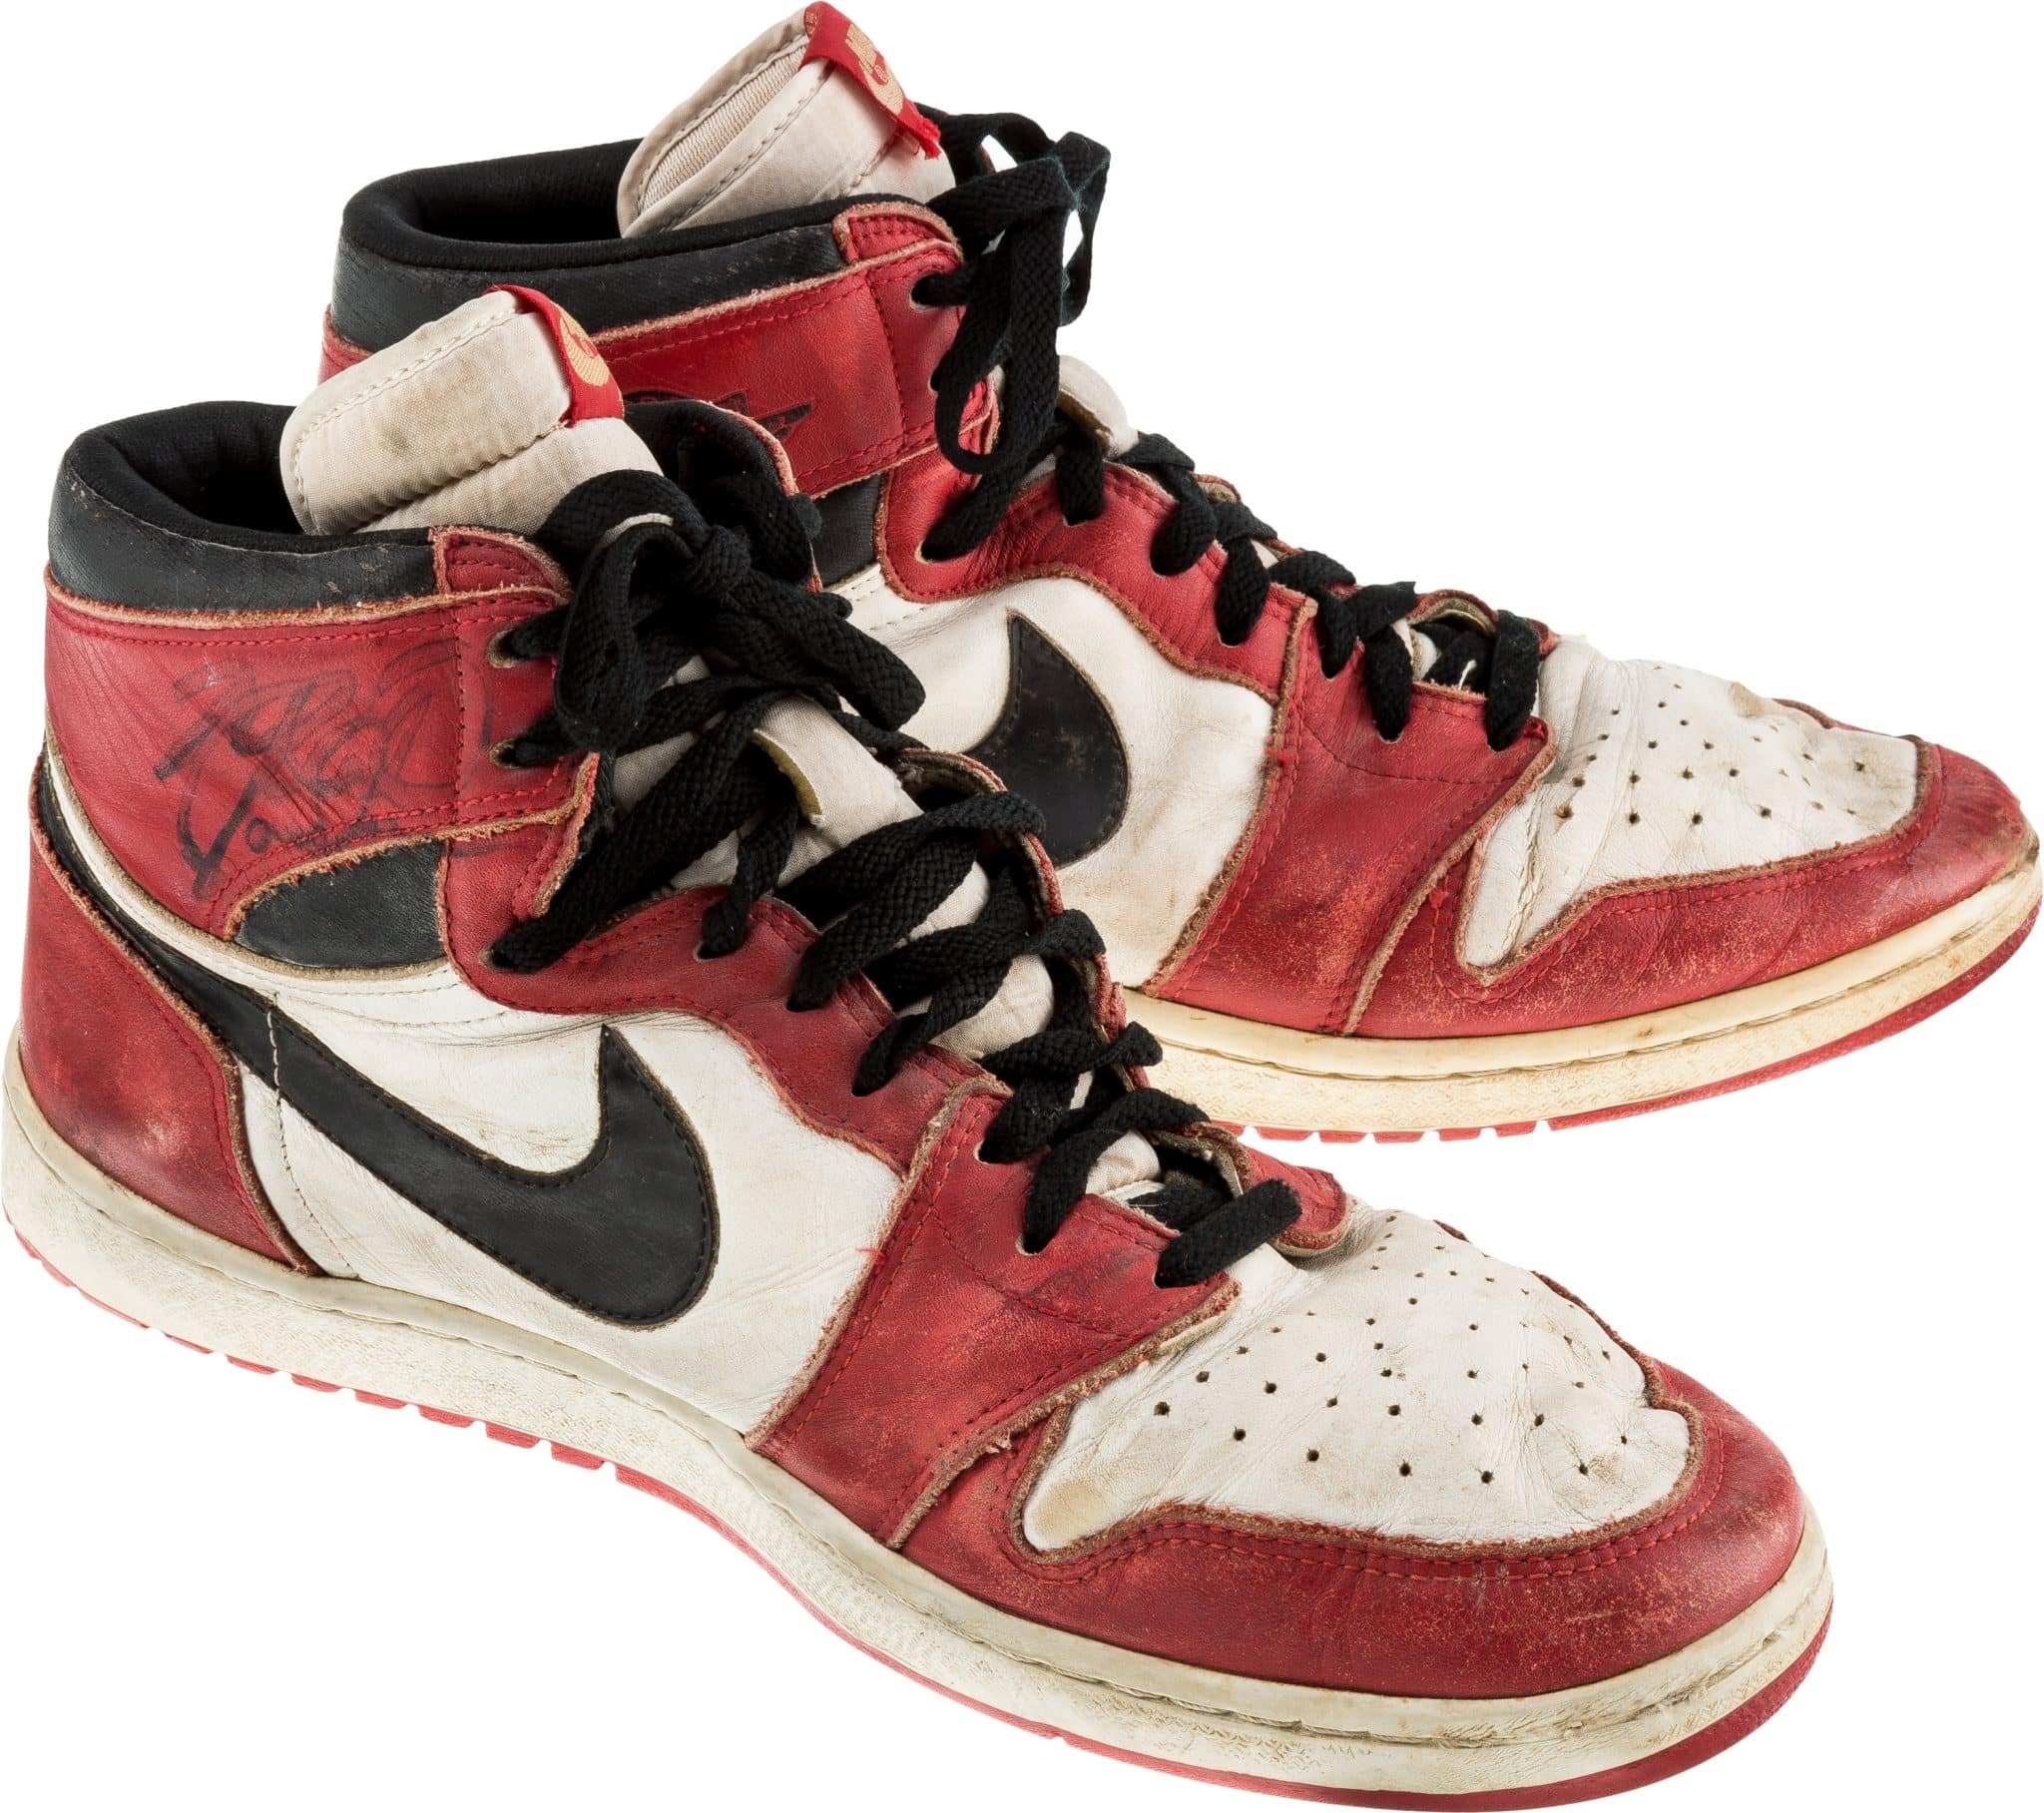 Michael Jordans worn Air Jordan 1's 